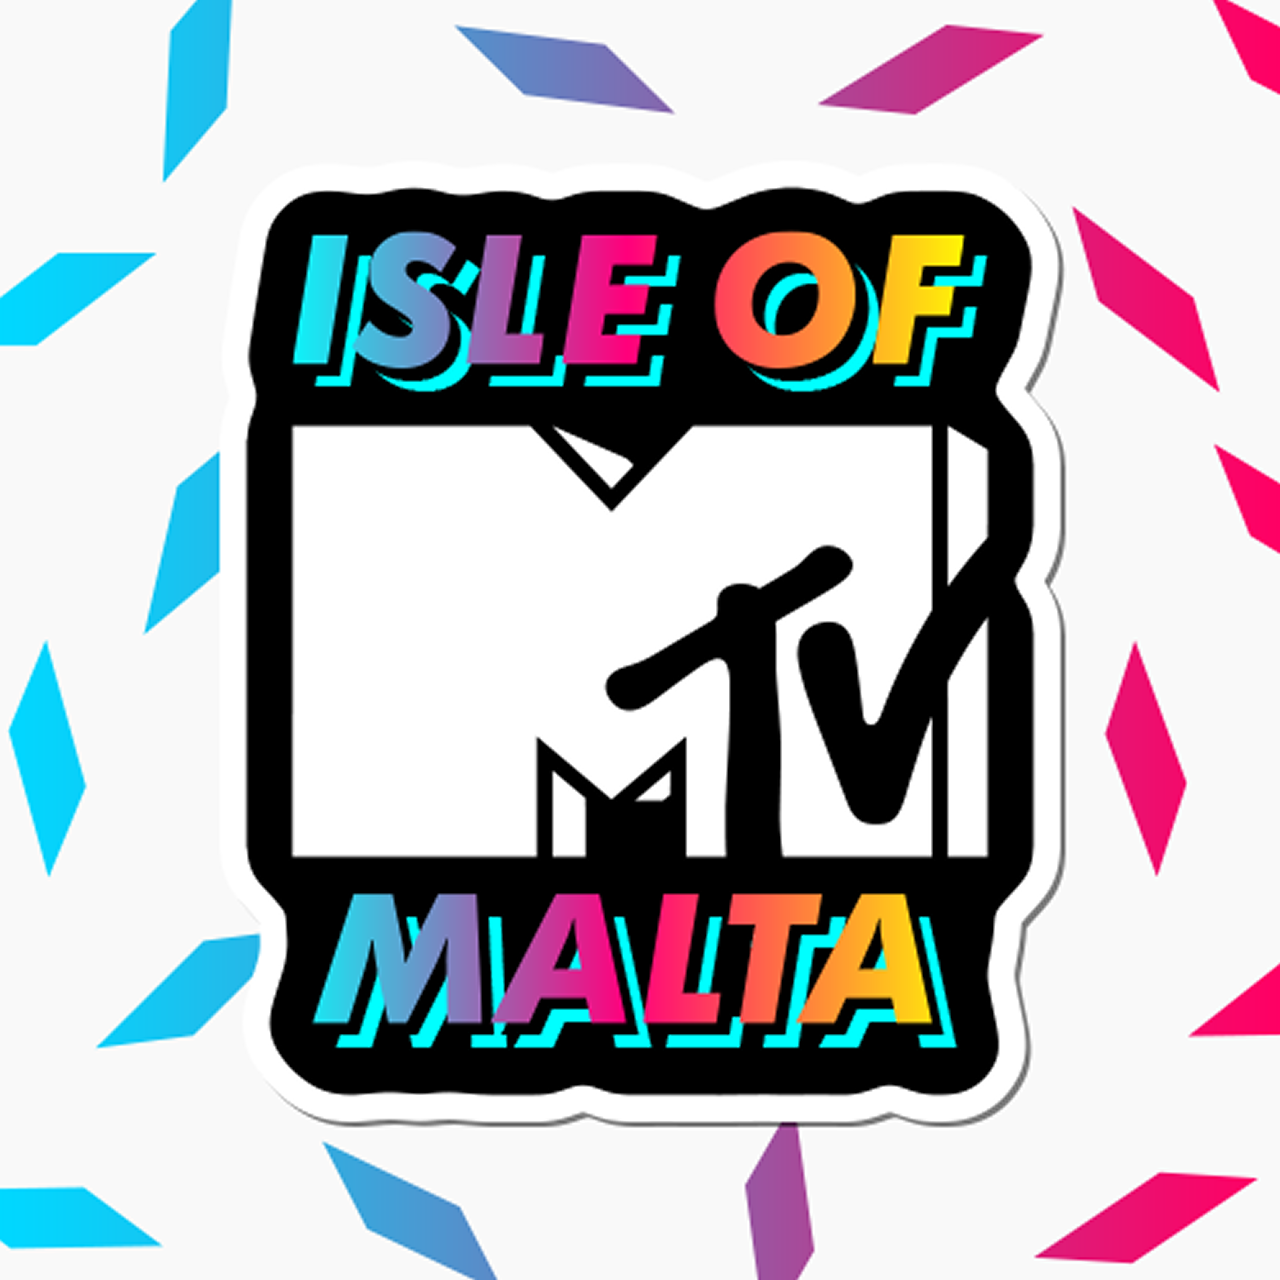 Isla of MTV Malta